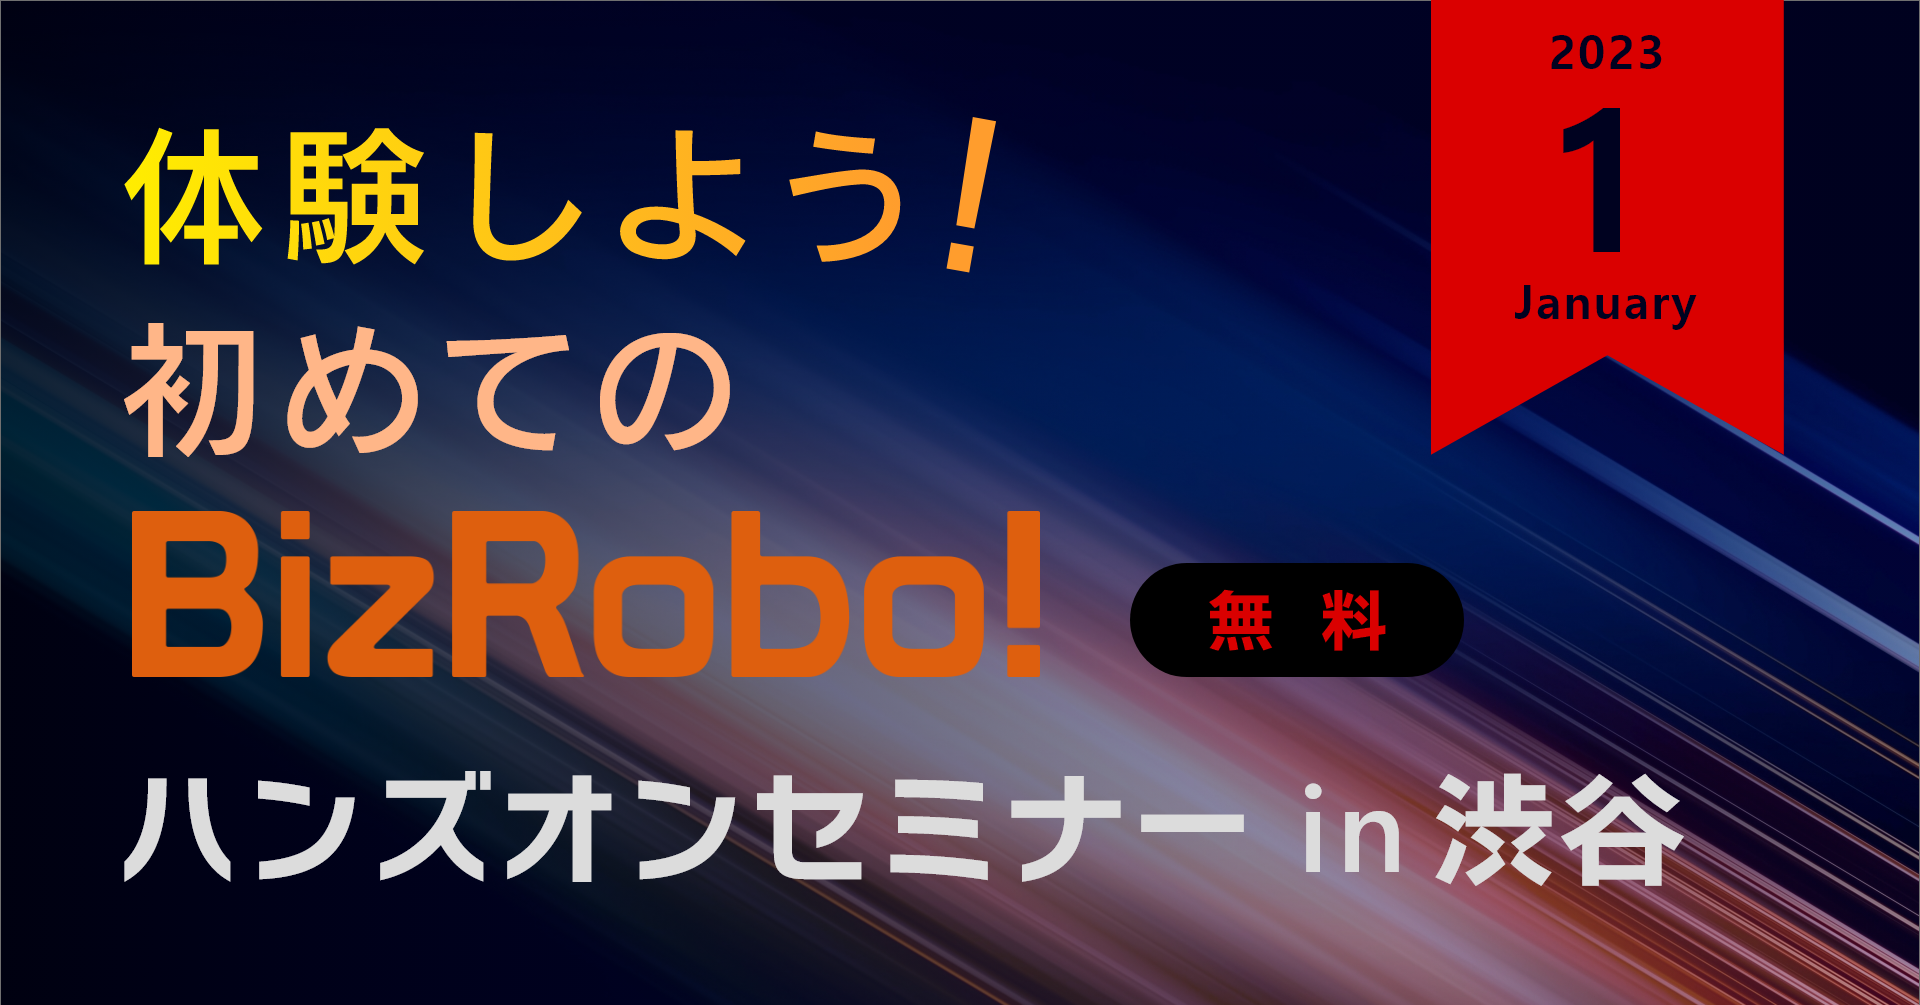 体験しよう！初めてのBizRobo! ハンズオンセミナー in 渋谷【2023年1月】
